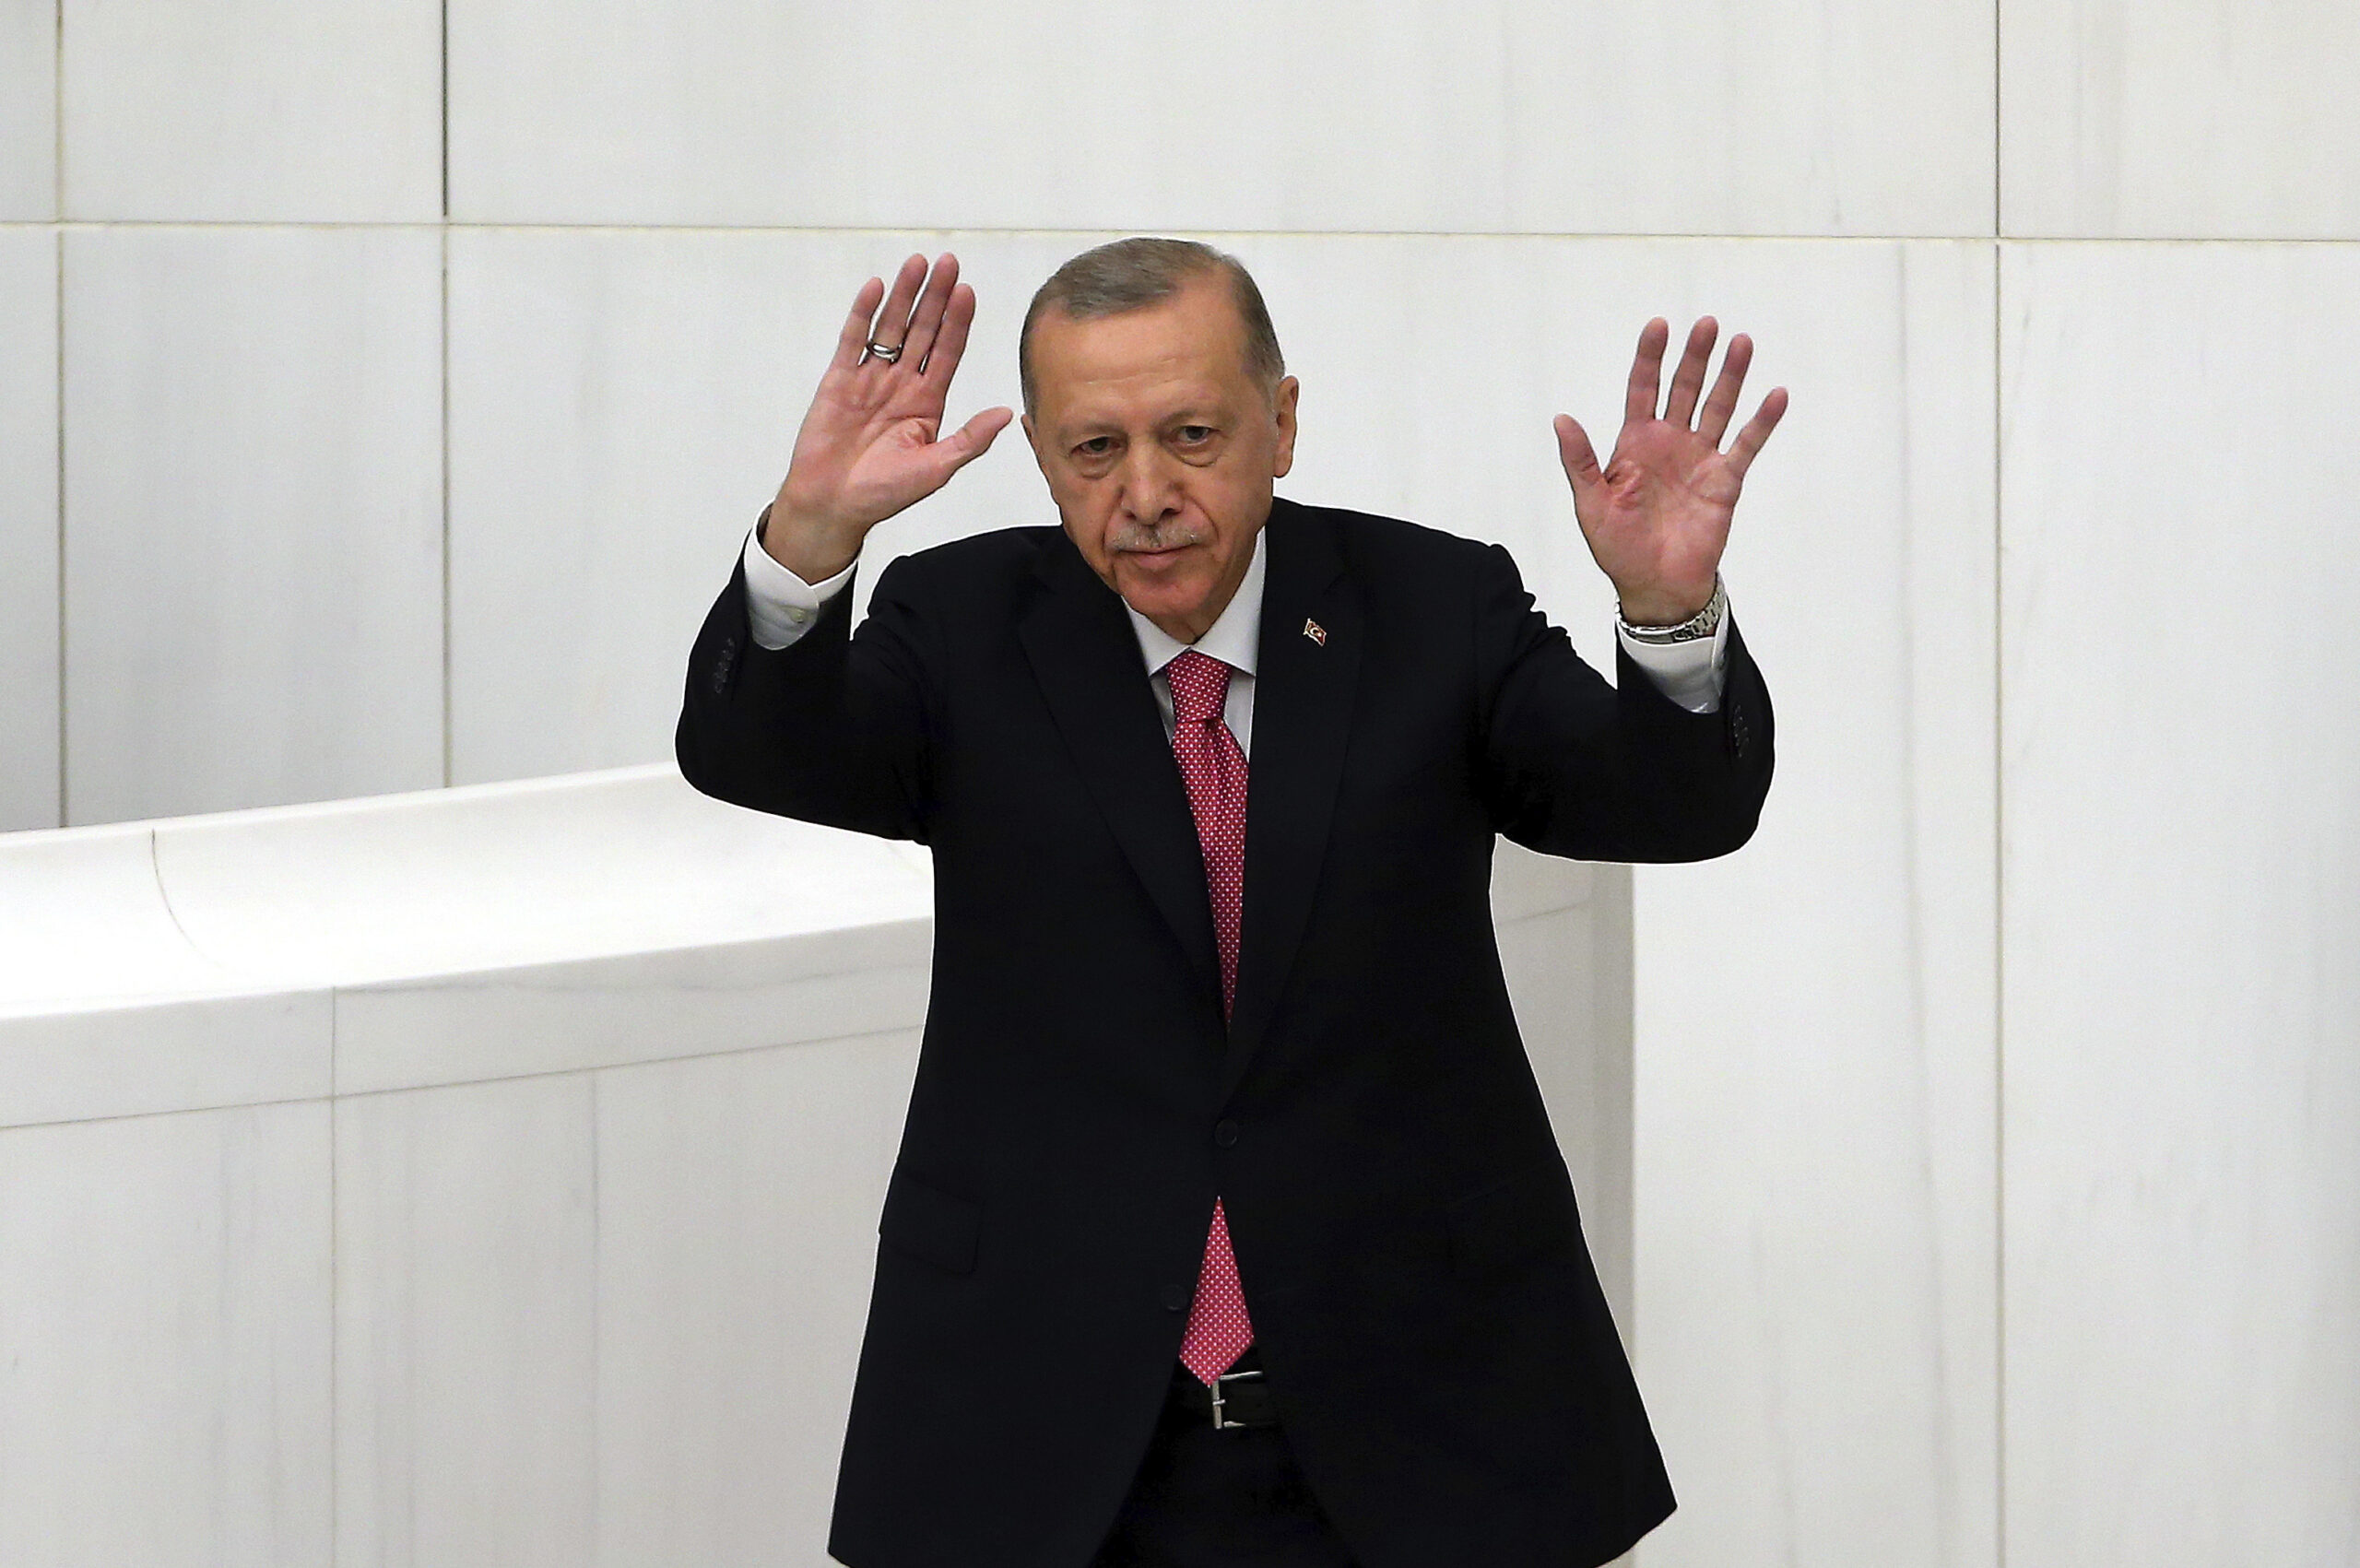 Ορκωμοσία Ερντογάν με μήνυμα ενότητας – Εν αναμονή της ανακοίνωσης του υπουργικού